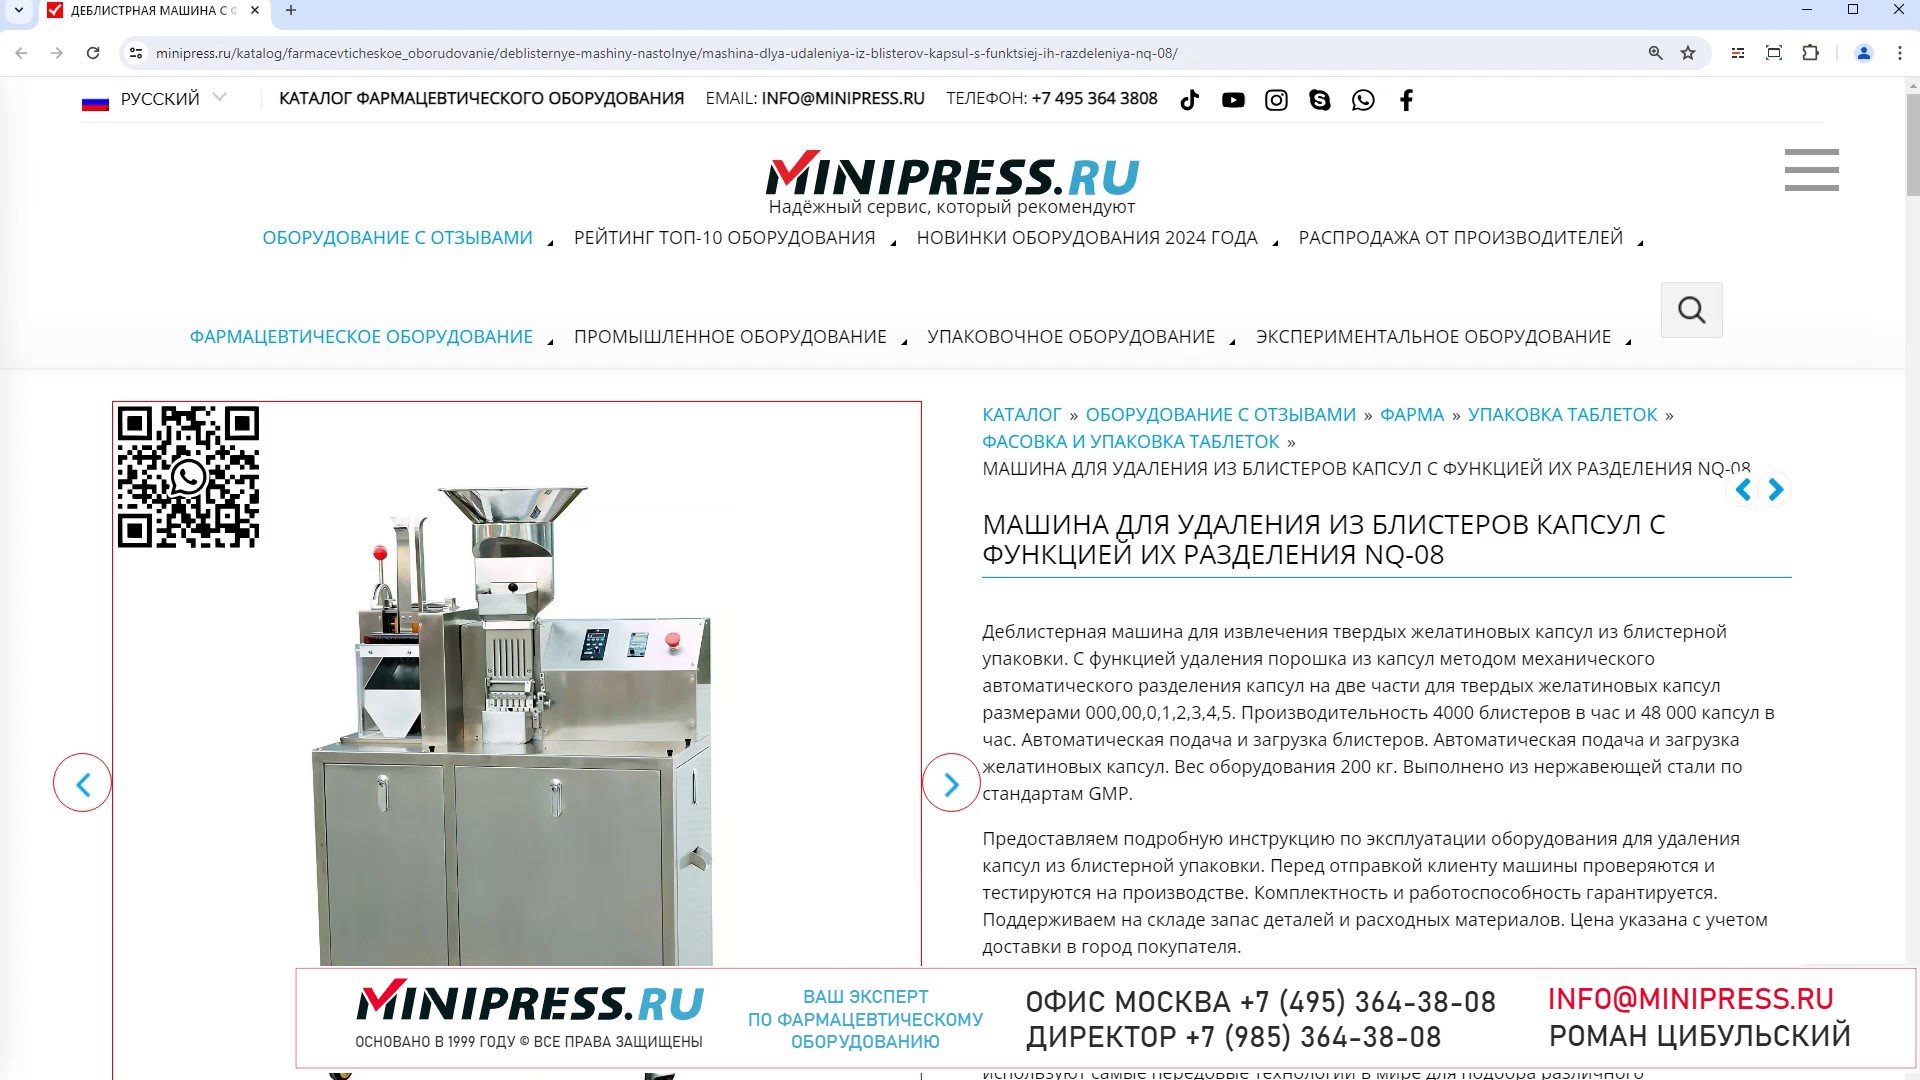 Minipress.ru Машина для удаления из блистеров капсул с функцией их разделения  NQ-08